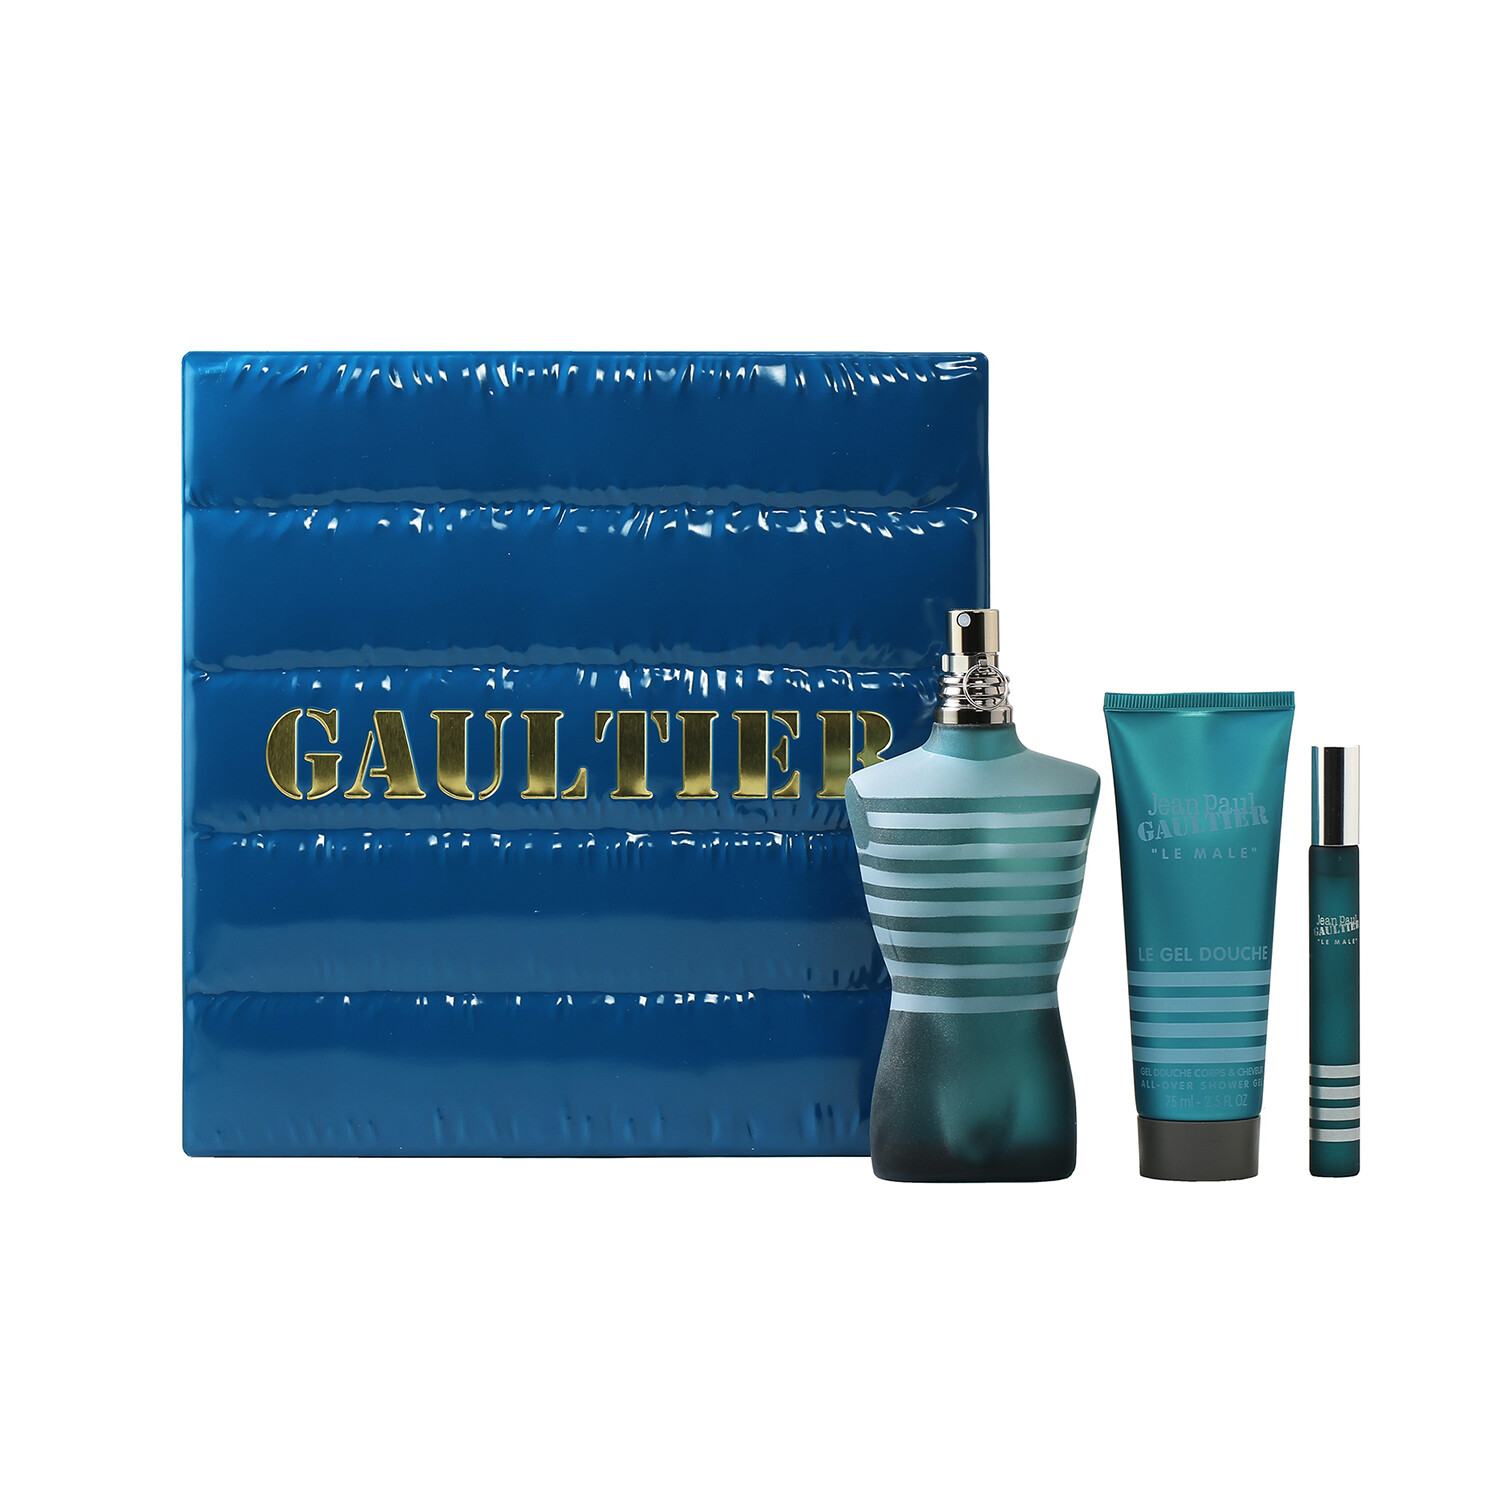 Buy Le Male Gift Set by Jean Paul Gaultier Standard Eau De Toilette for Men